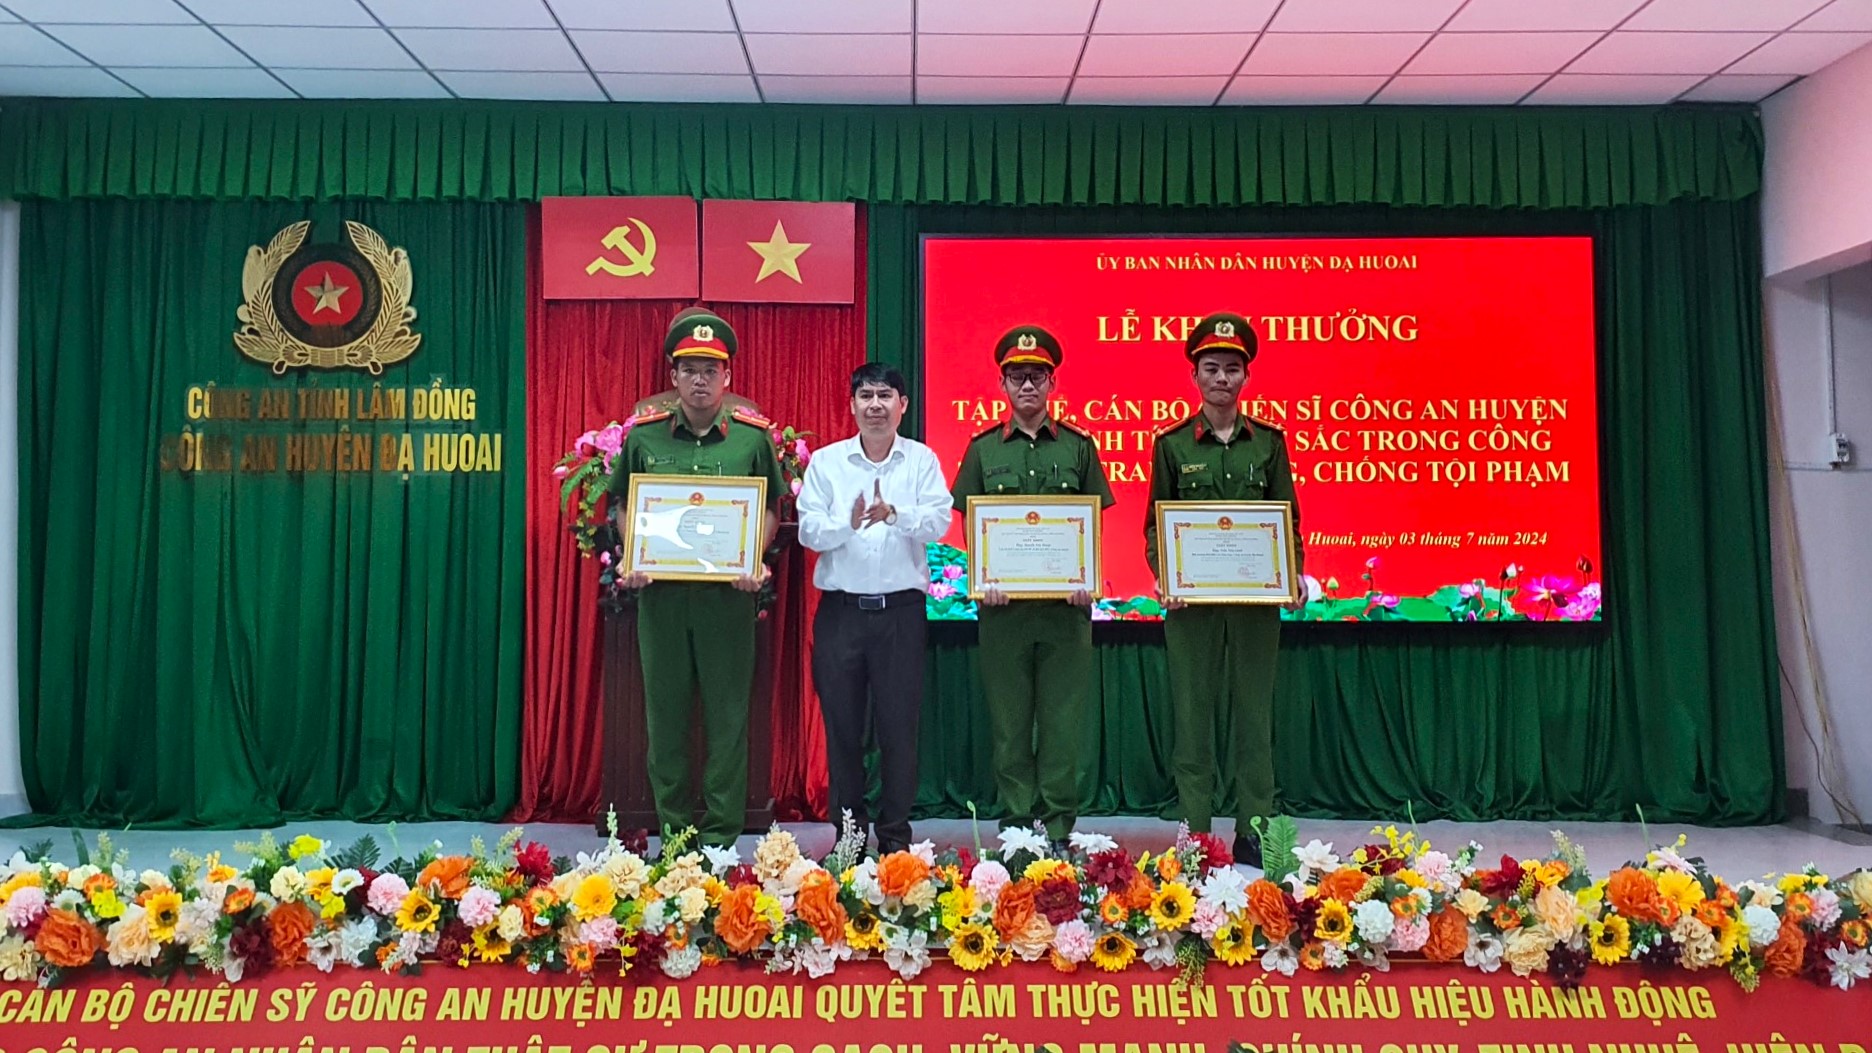 Chủ tịch UBND huyện Đạ Huoai Lê Bình Minh trao tặng giấy khen cho các cán bộ, chiến sĩ Công an huyện Đạ Huoai có thành tích xuất sắc trong công tác đấu tranh, phòng chống tội phạm